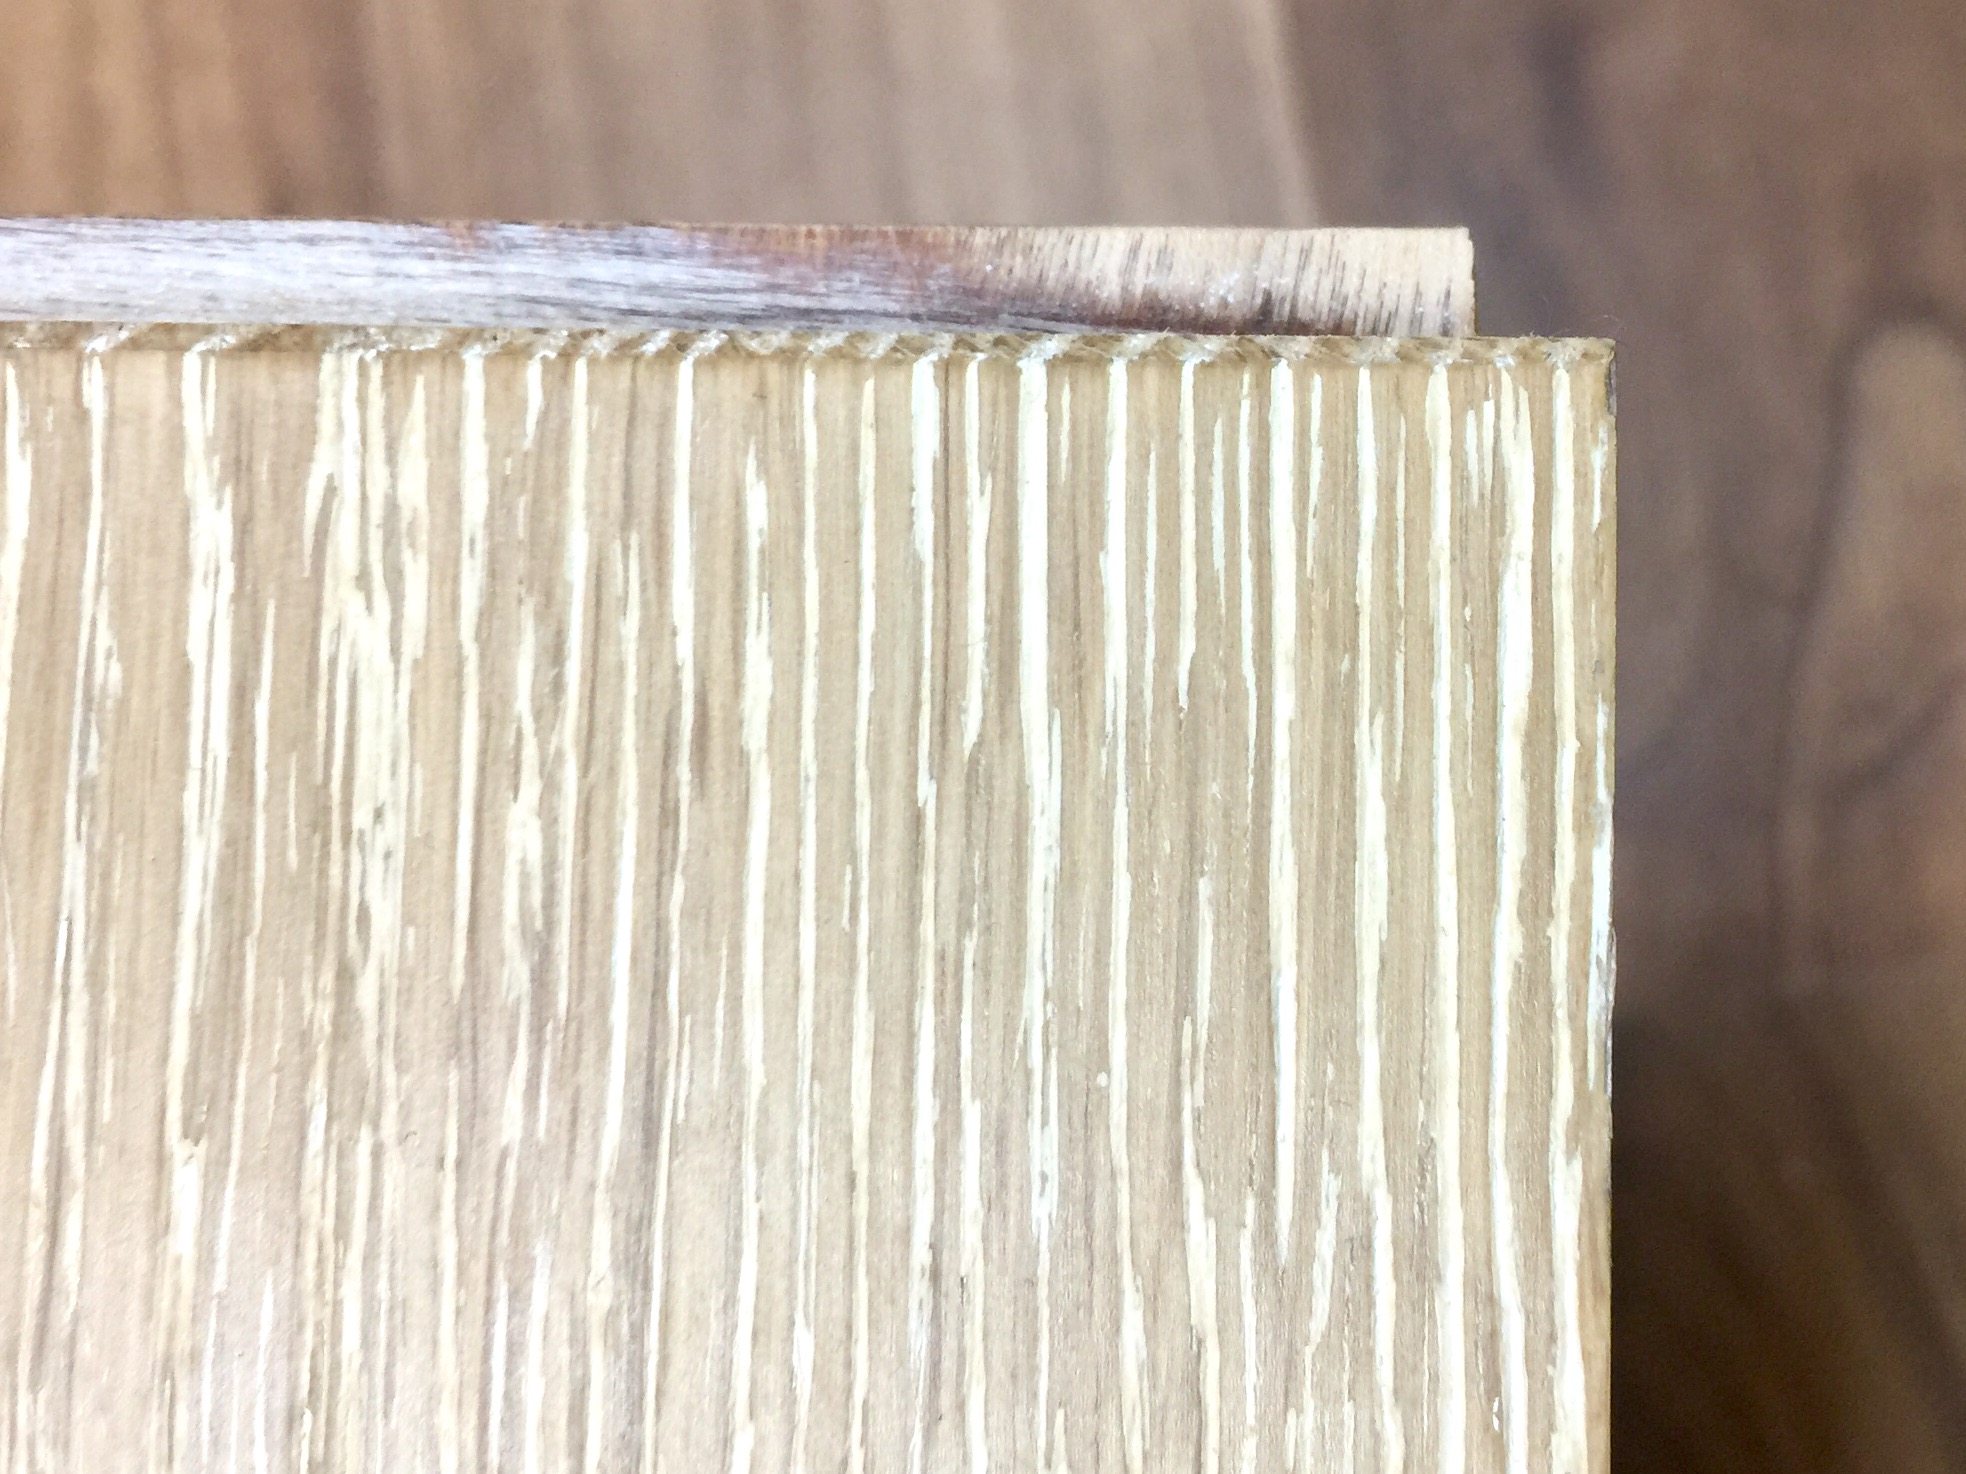 bevel edge engineered hardwood flooring